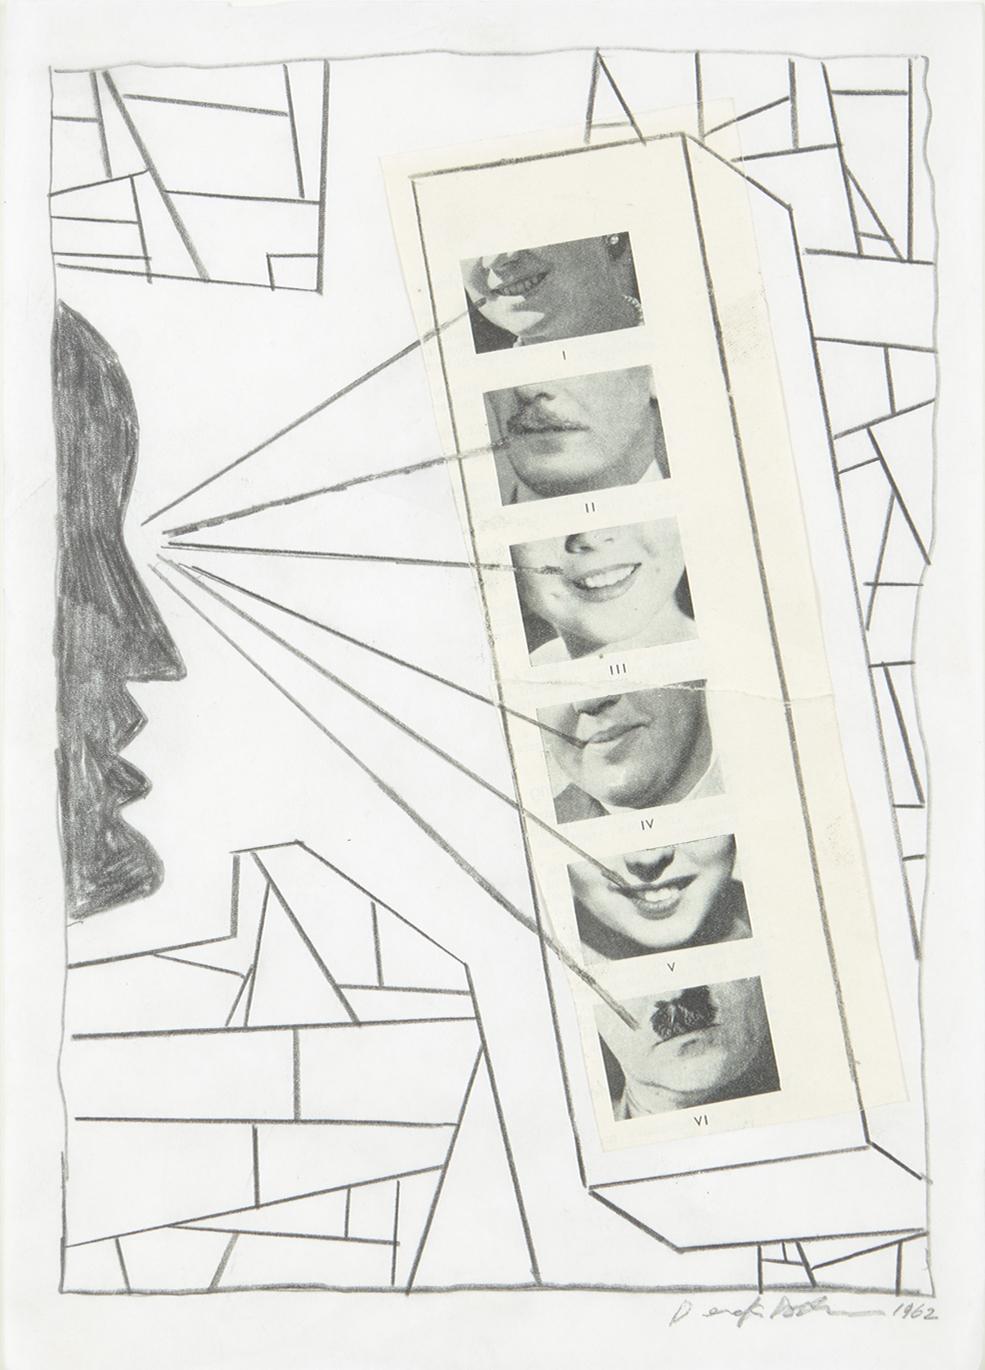 Eyeing Up - Original, Collage, 1962 - Art by Derek Boshier